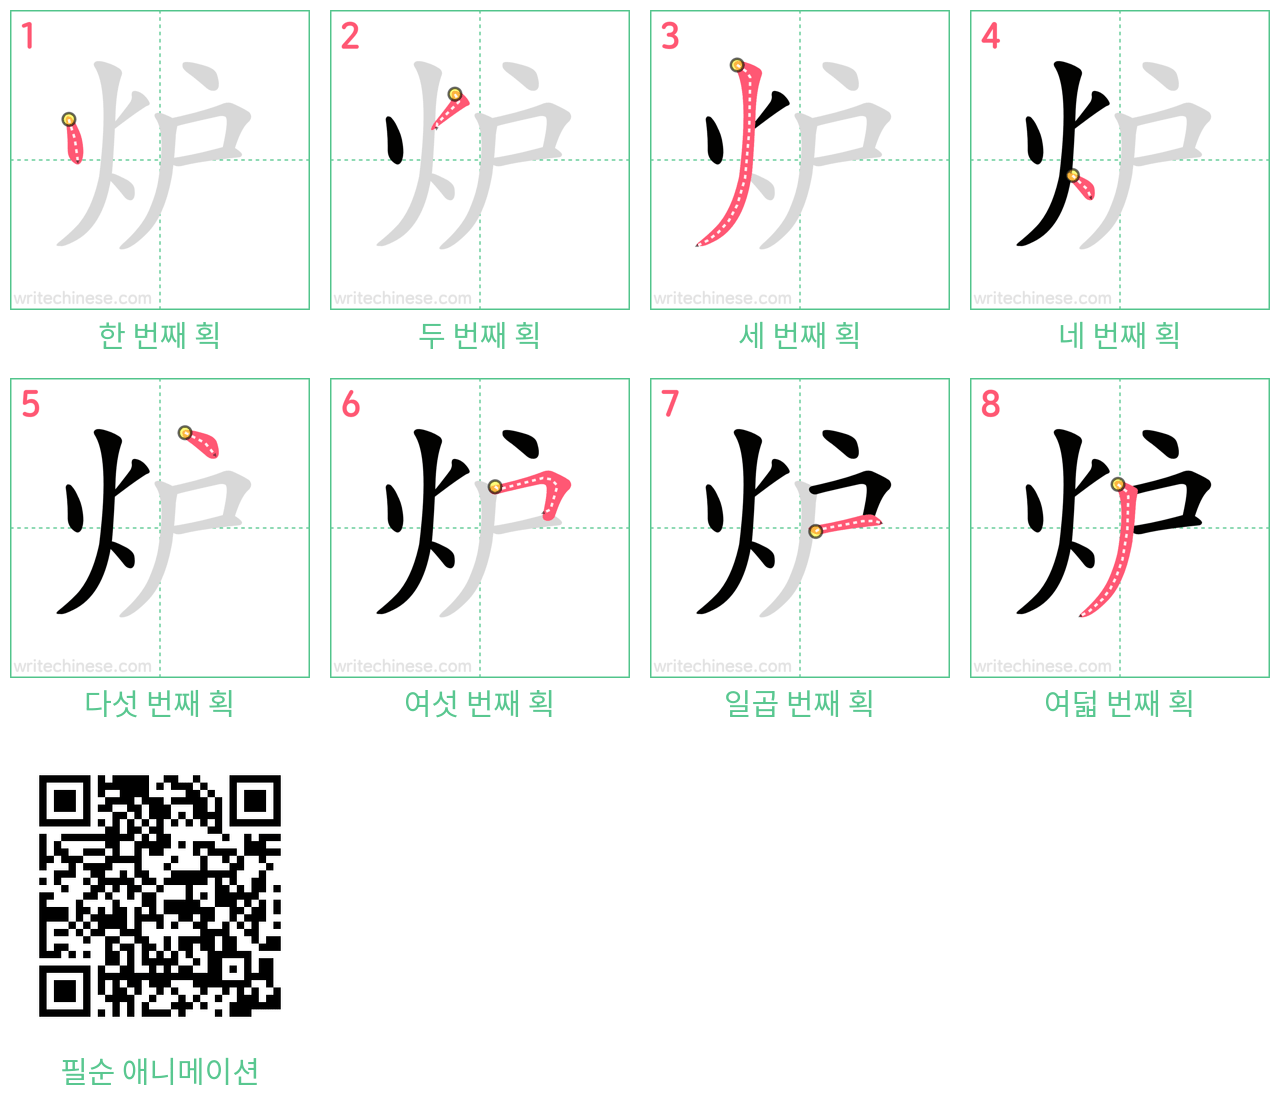 炉 step-by-step stroke order diagrams